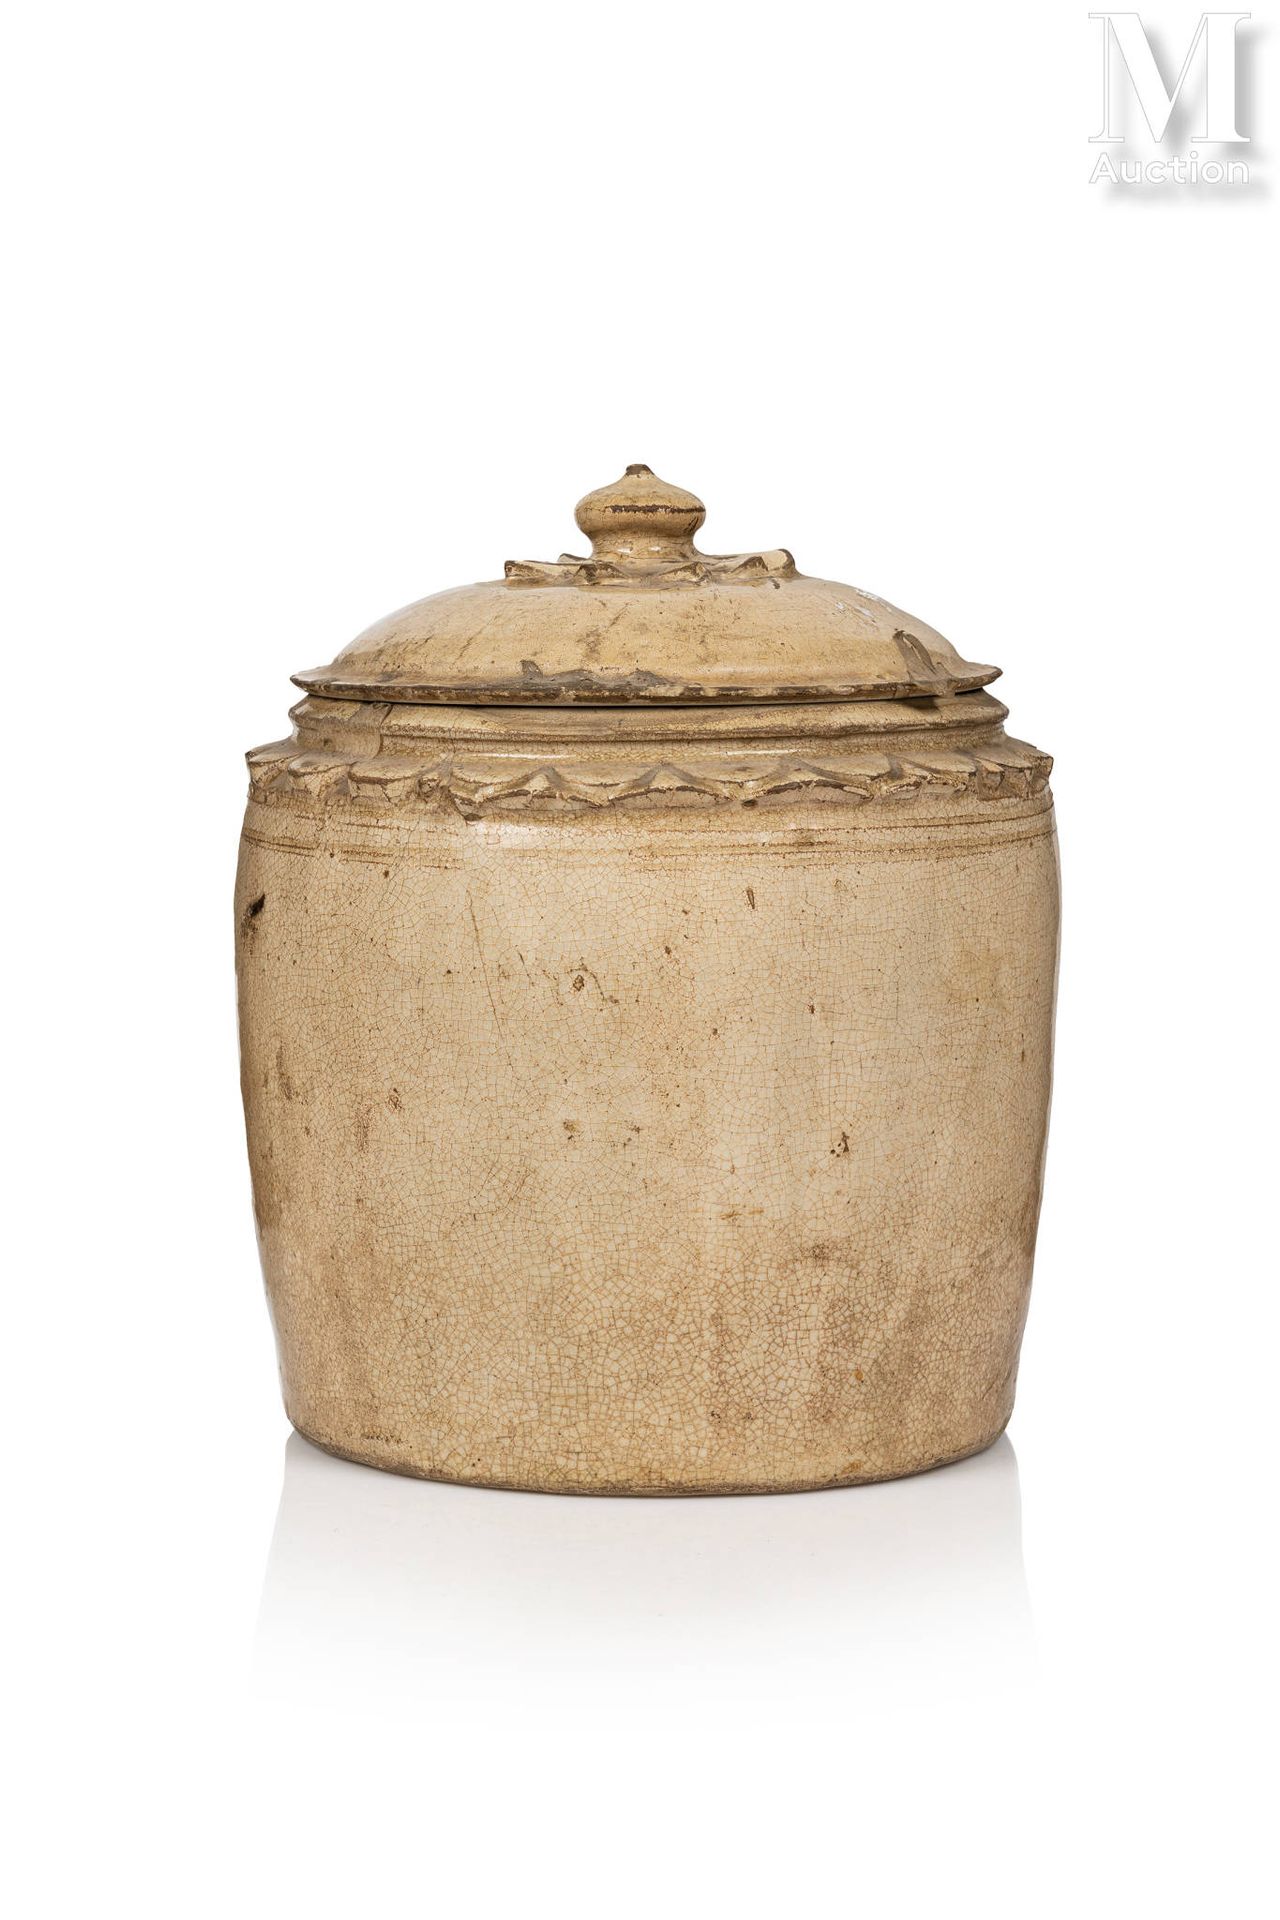 VIETNAM, Dynastie Ly (XIe/XIIIe siècle) 有盖陶瓷罐

带裂纹的米色釉面。
高度：22厘米 
直径 : 20 cm
(裂纹&hellip;